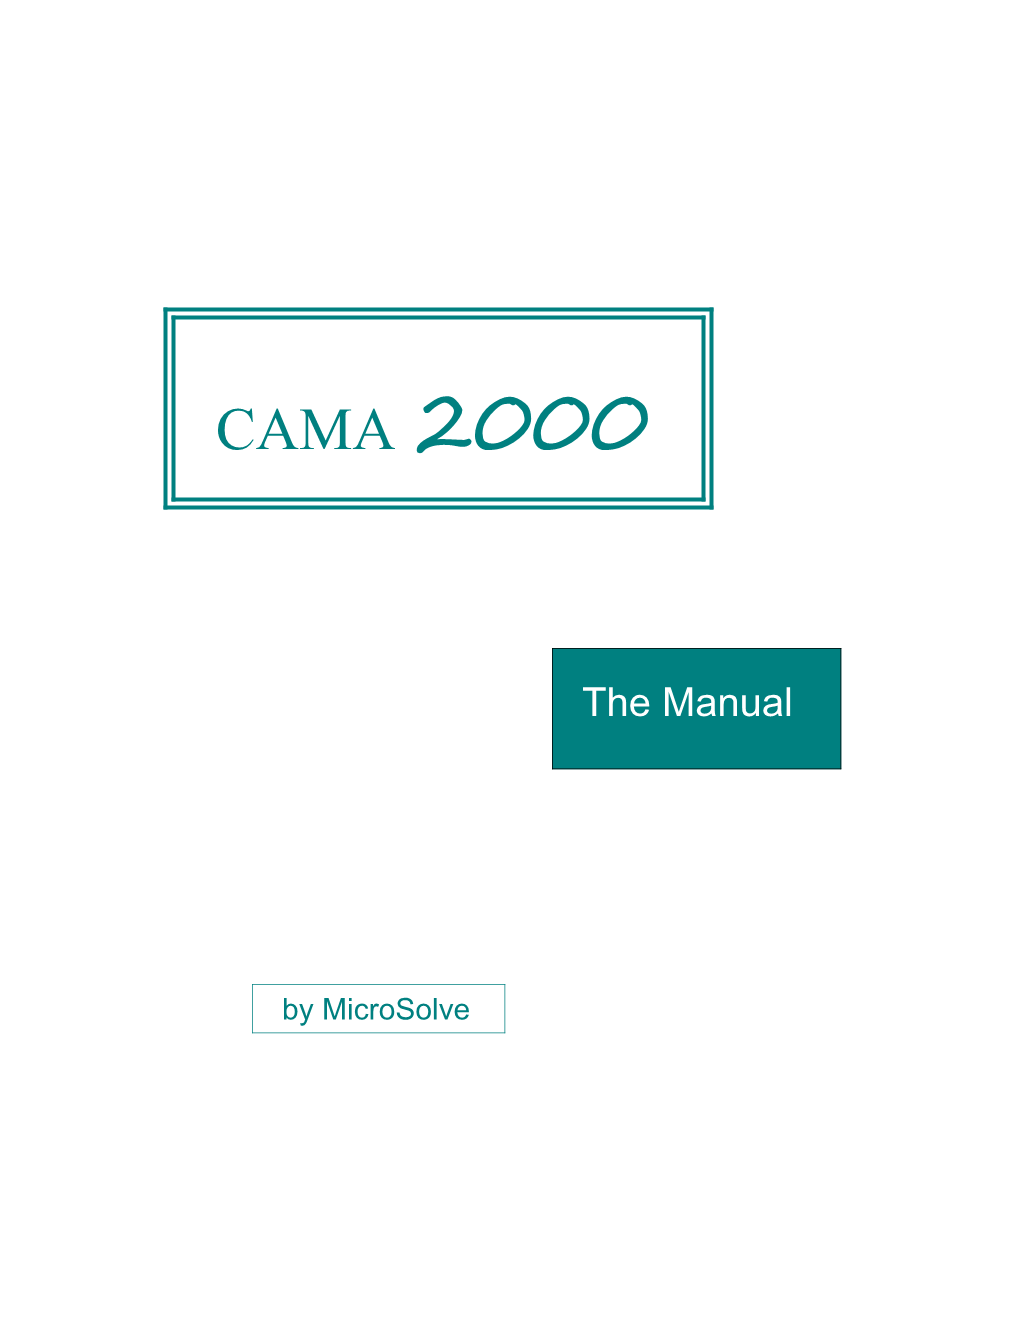 Installing Cama, Installing Apex, Starting Cama, Security, Renaming